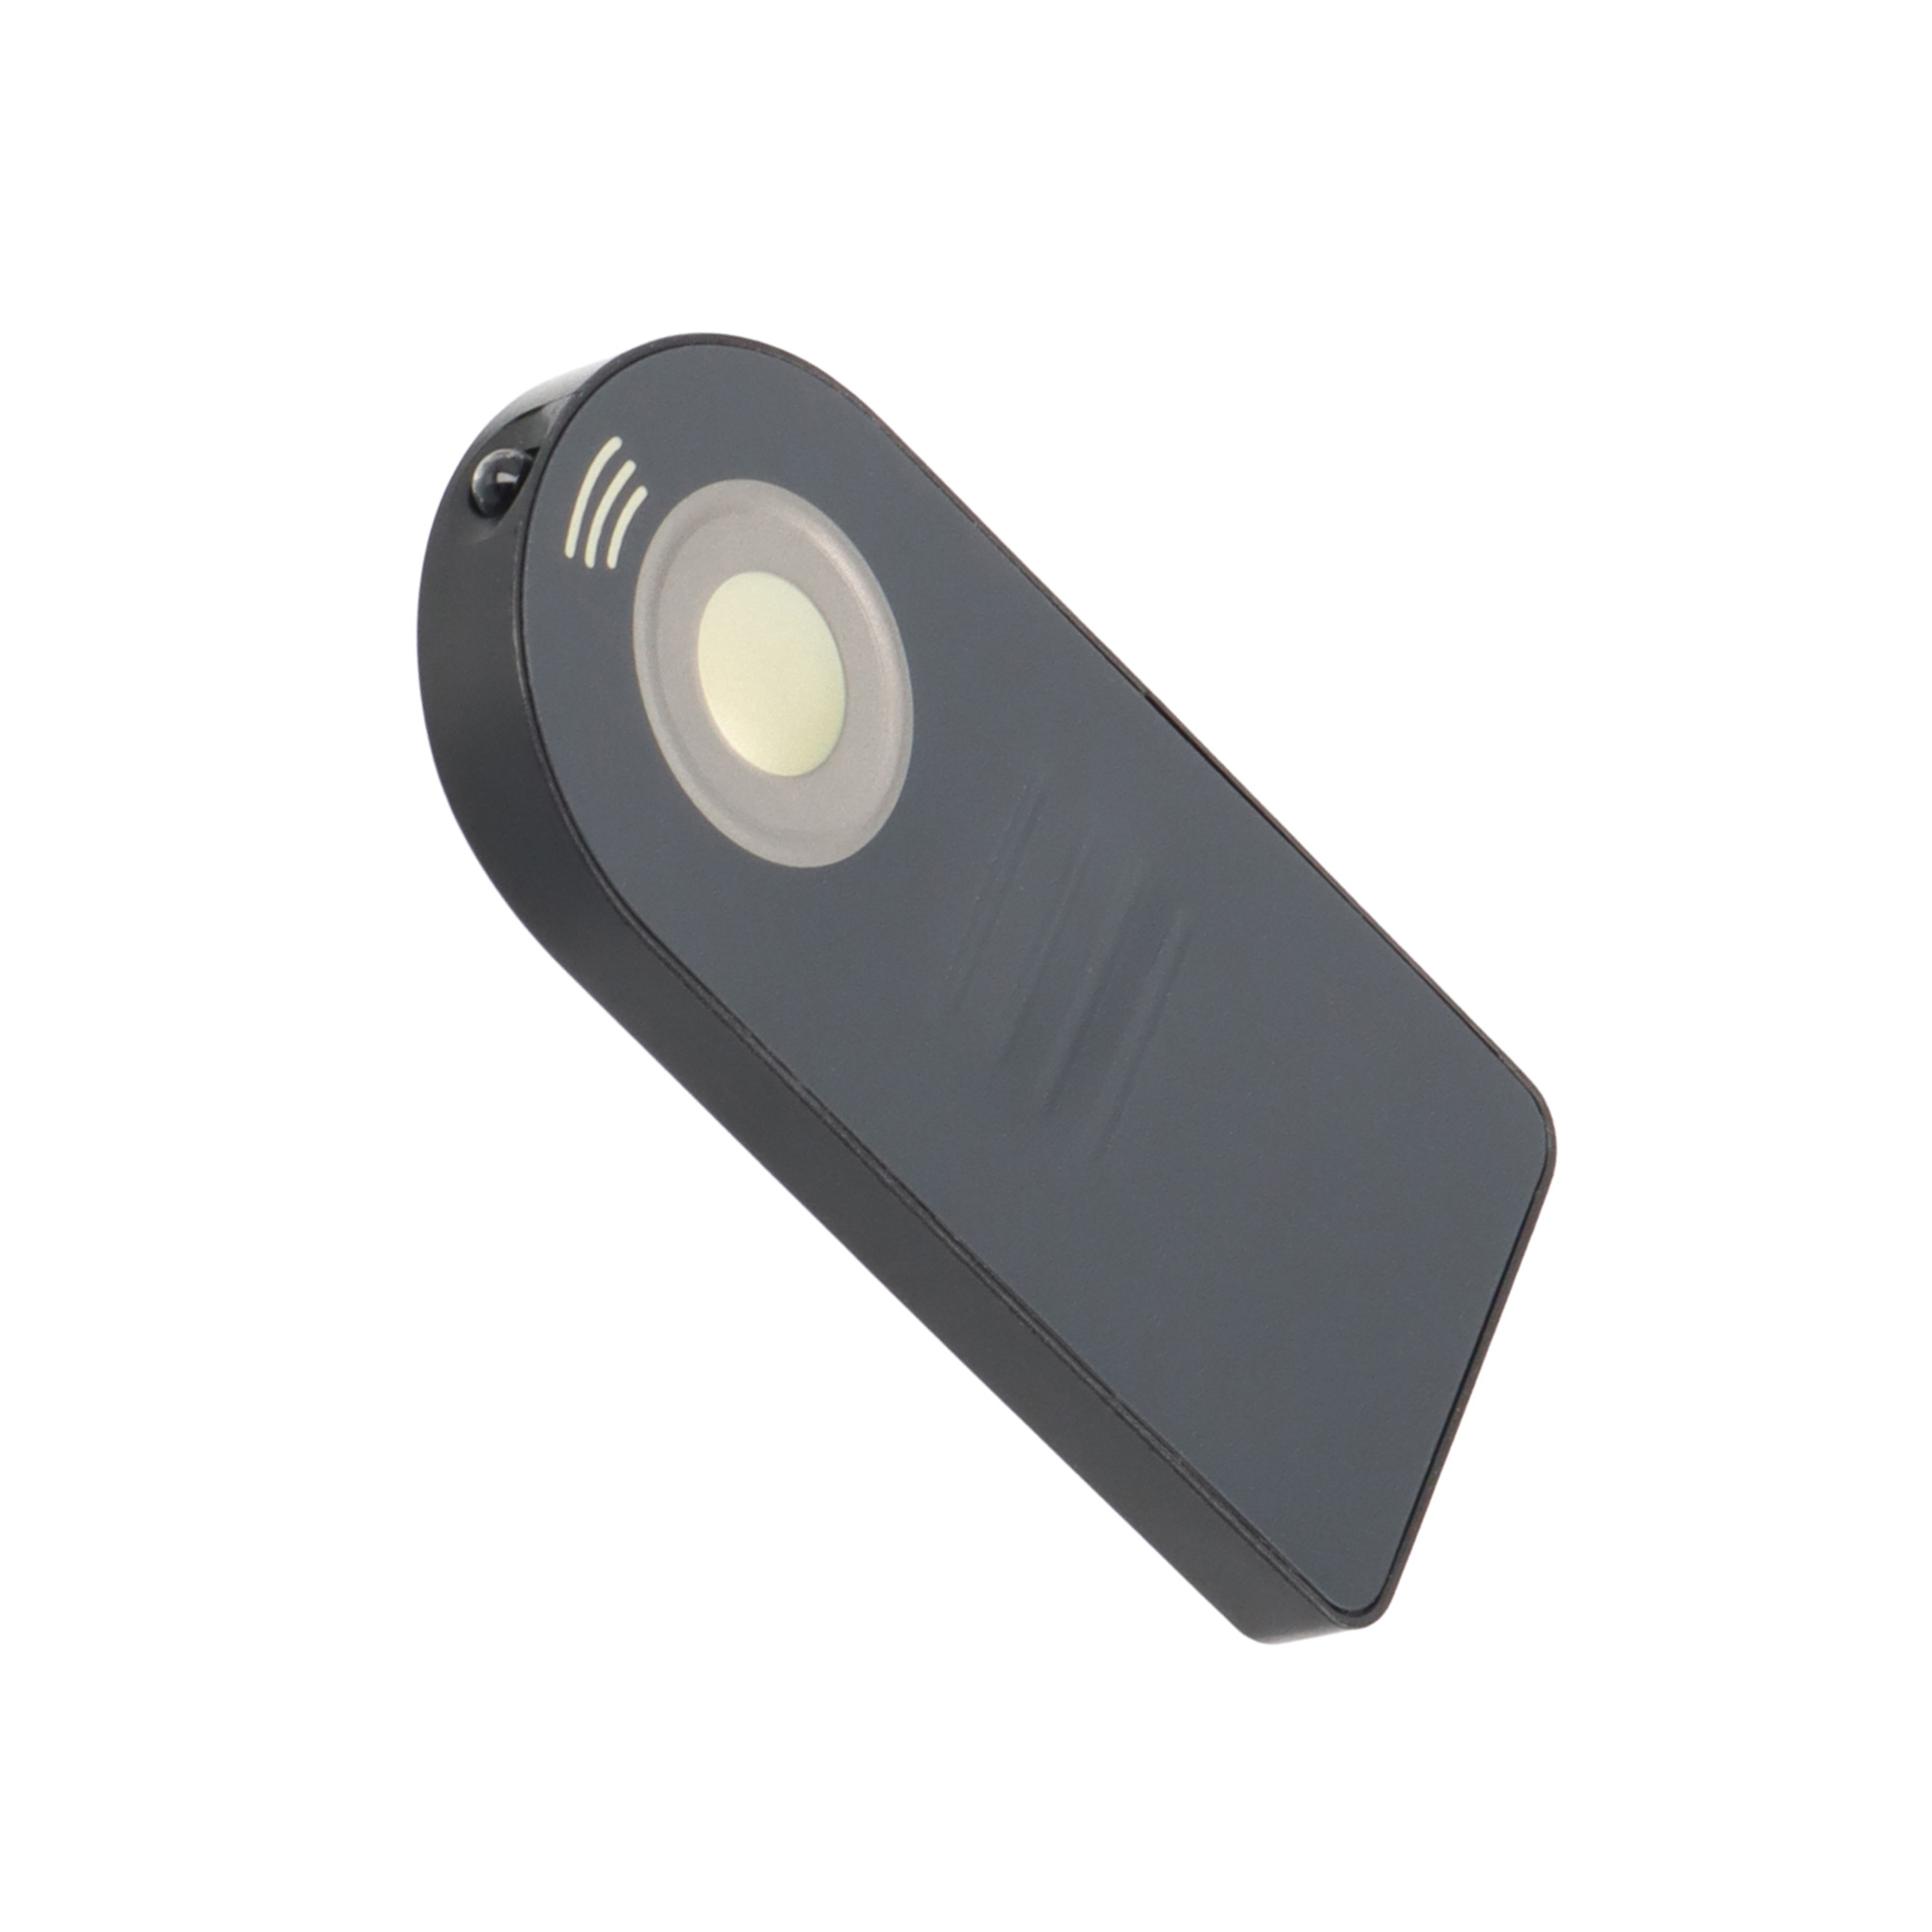 AYEX Infrarot Fernauslöser Mini IR Fernauslöser, für Kameras, Nikon Infrarot Fernbedienung Black